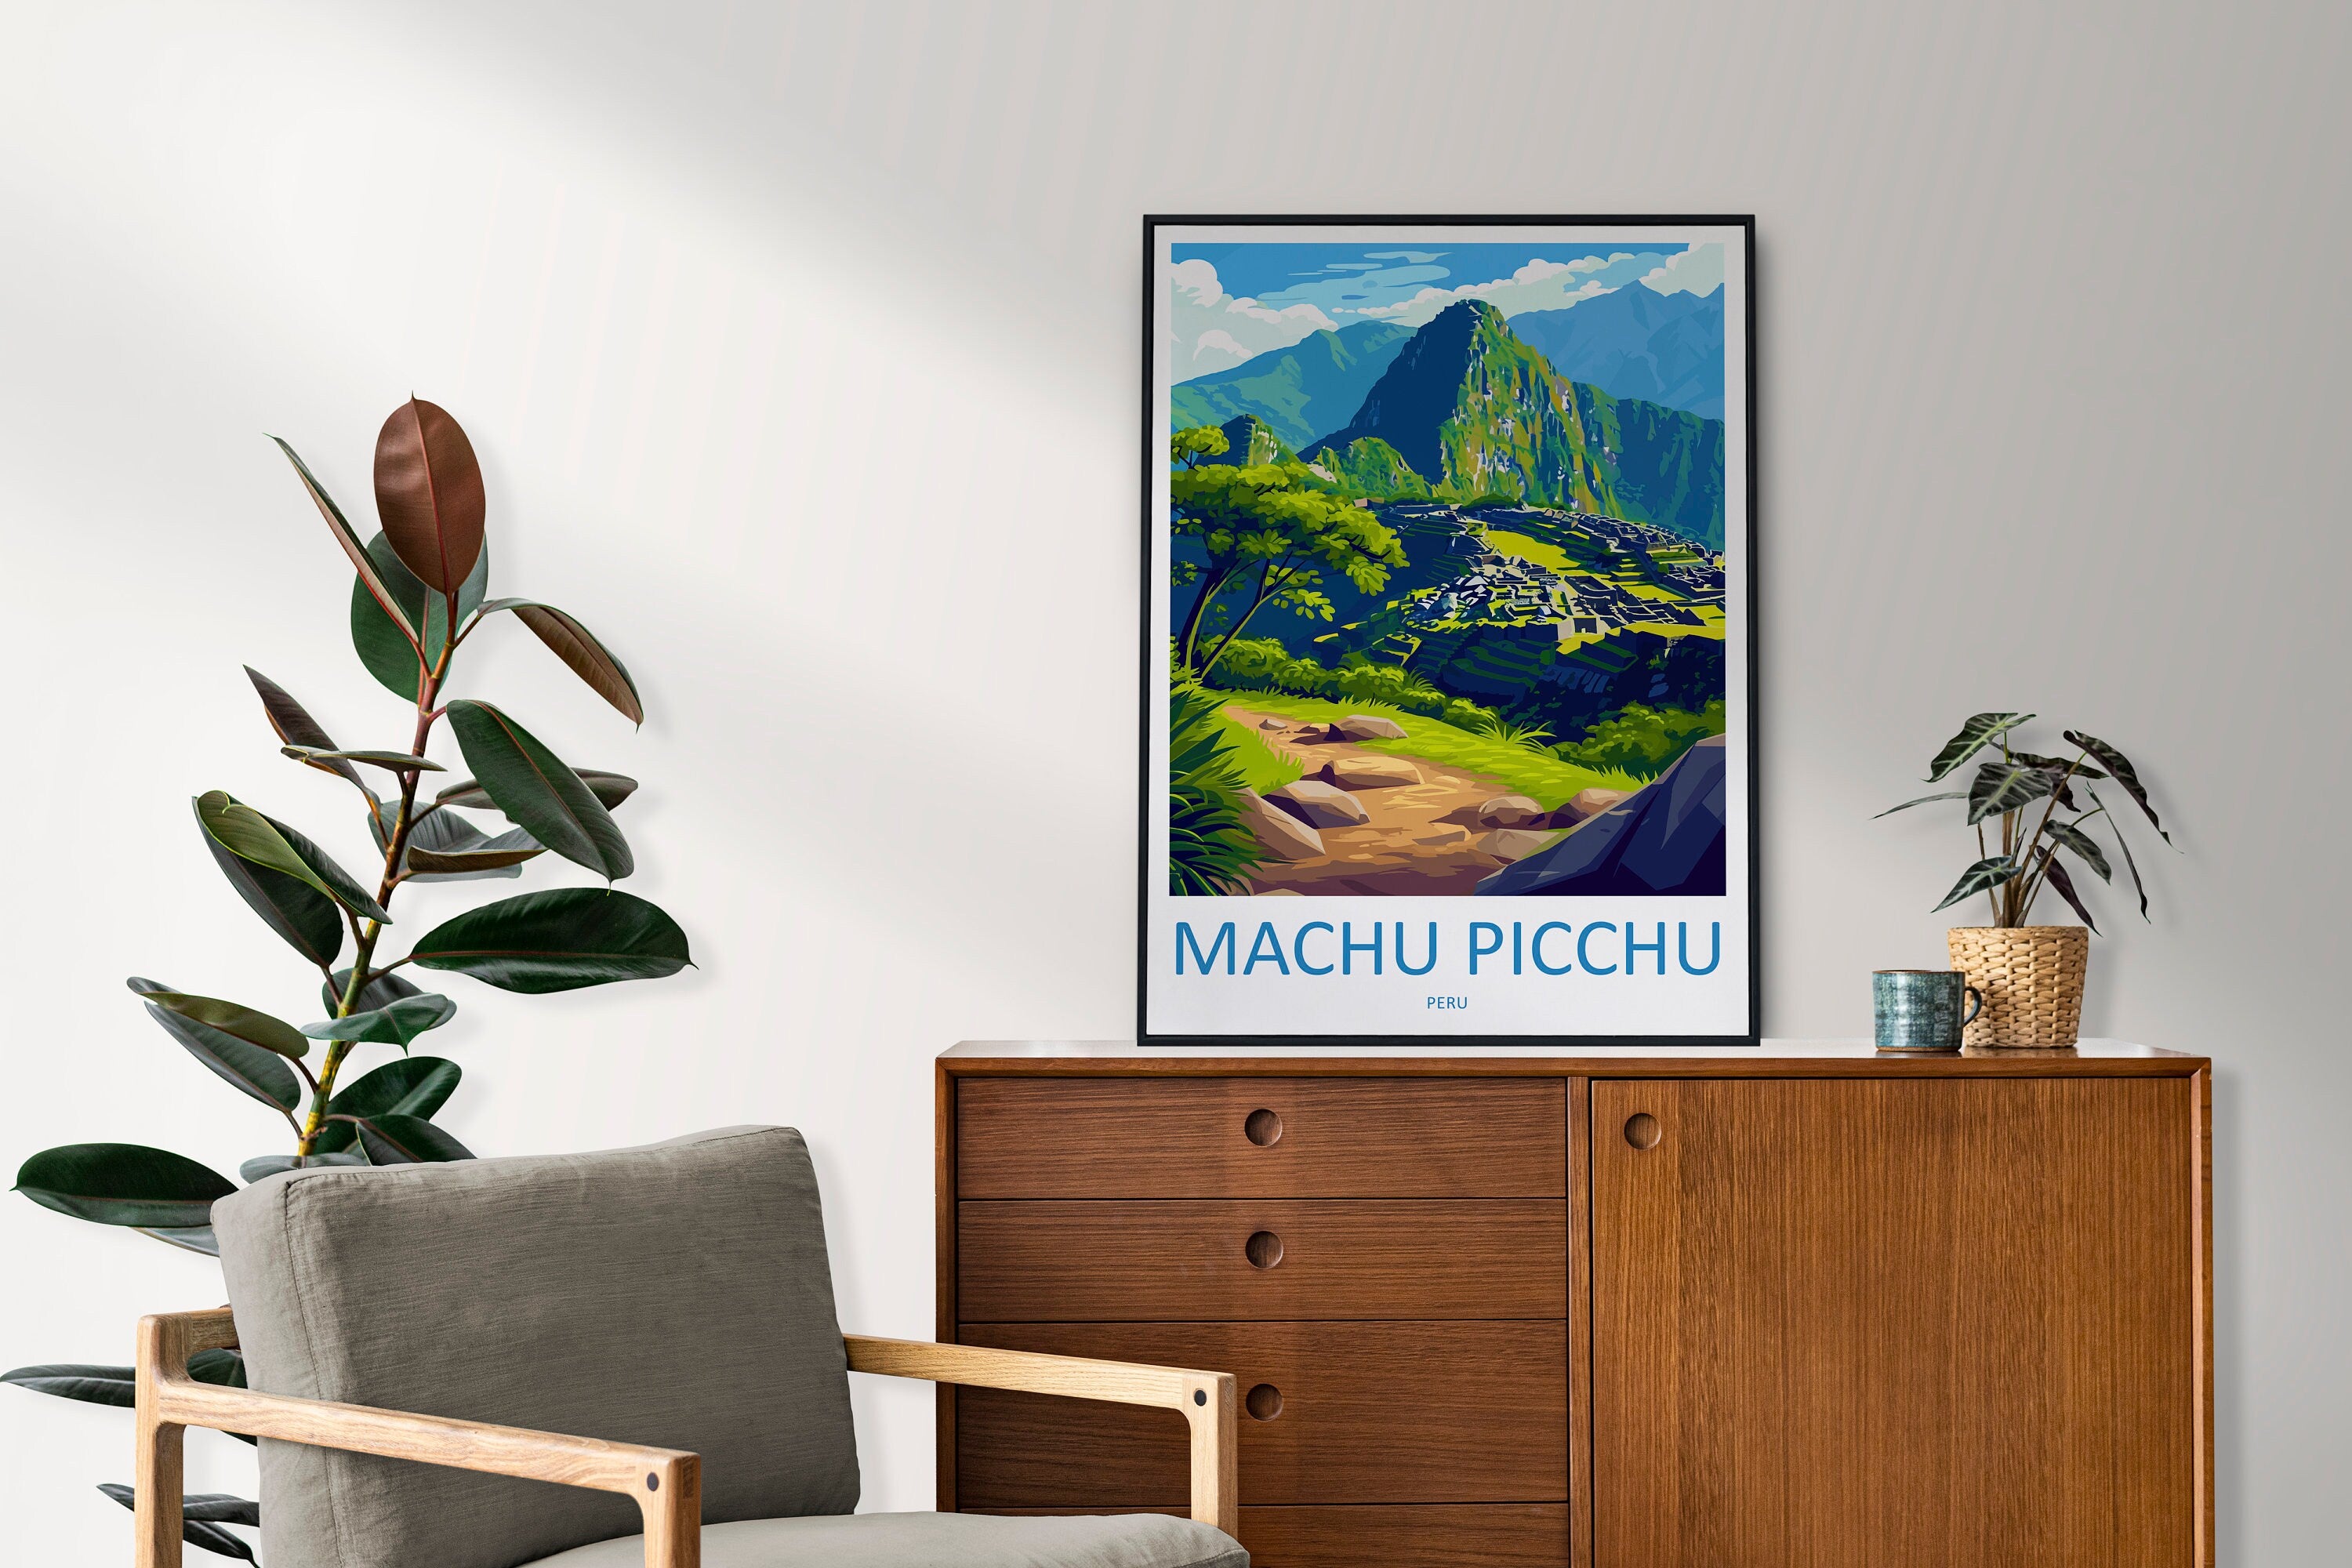 Machu Picchu Travel Print Wall Art Machu Picchu Wall Hanging Home Décor Machu Picchu Gift Art Lovers Peru Art Lover Gift Peru